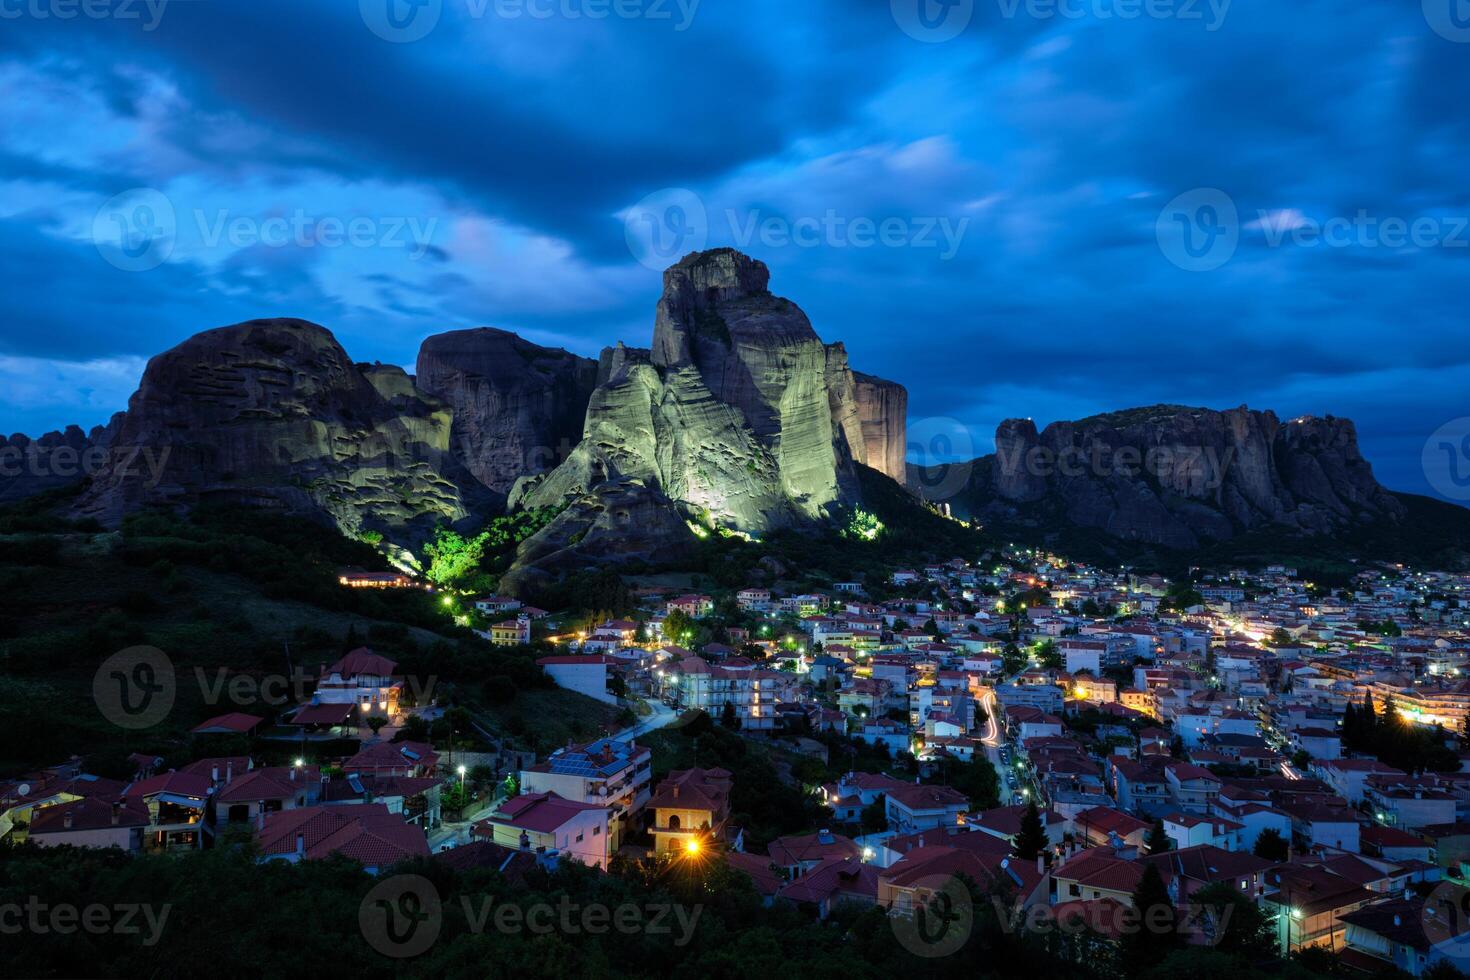 kalambaka Dorf im berühmt Tourist Ziel Meteora im Griechenland im Nacht foto